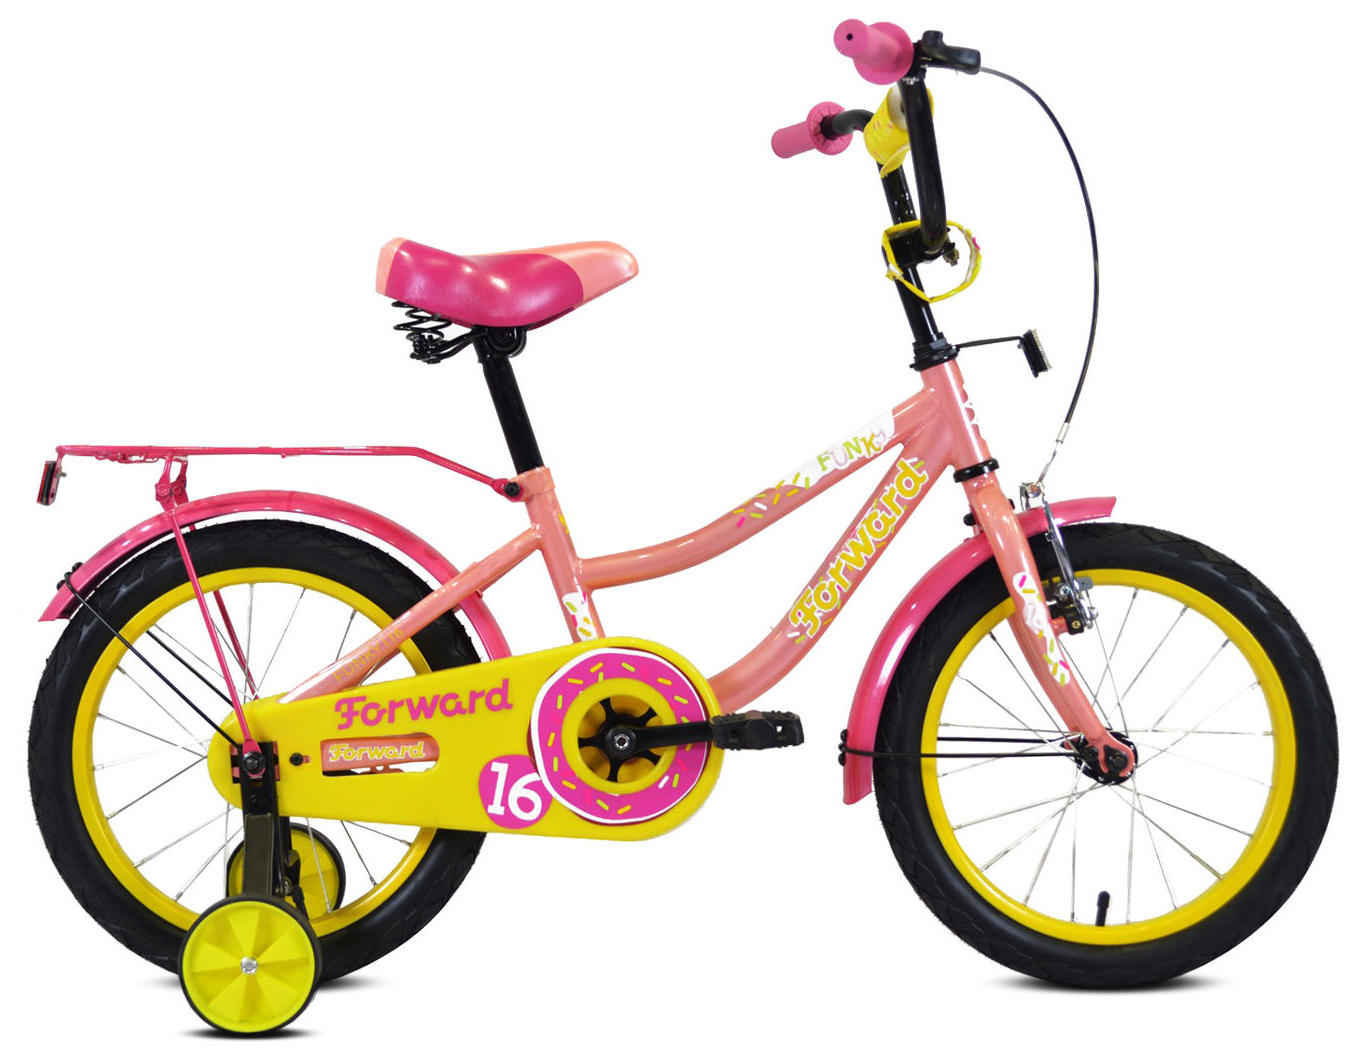  Отзывы о Детском велосипеде Forward Funky 16 2020